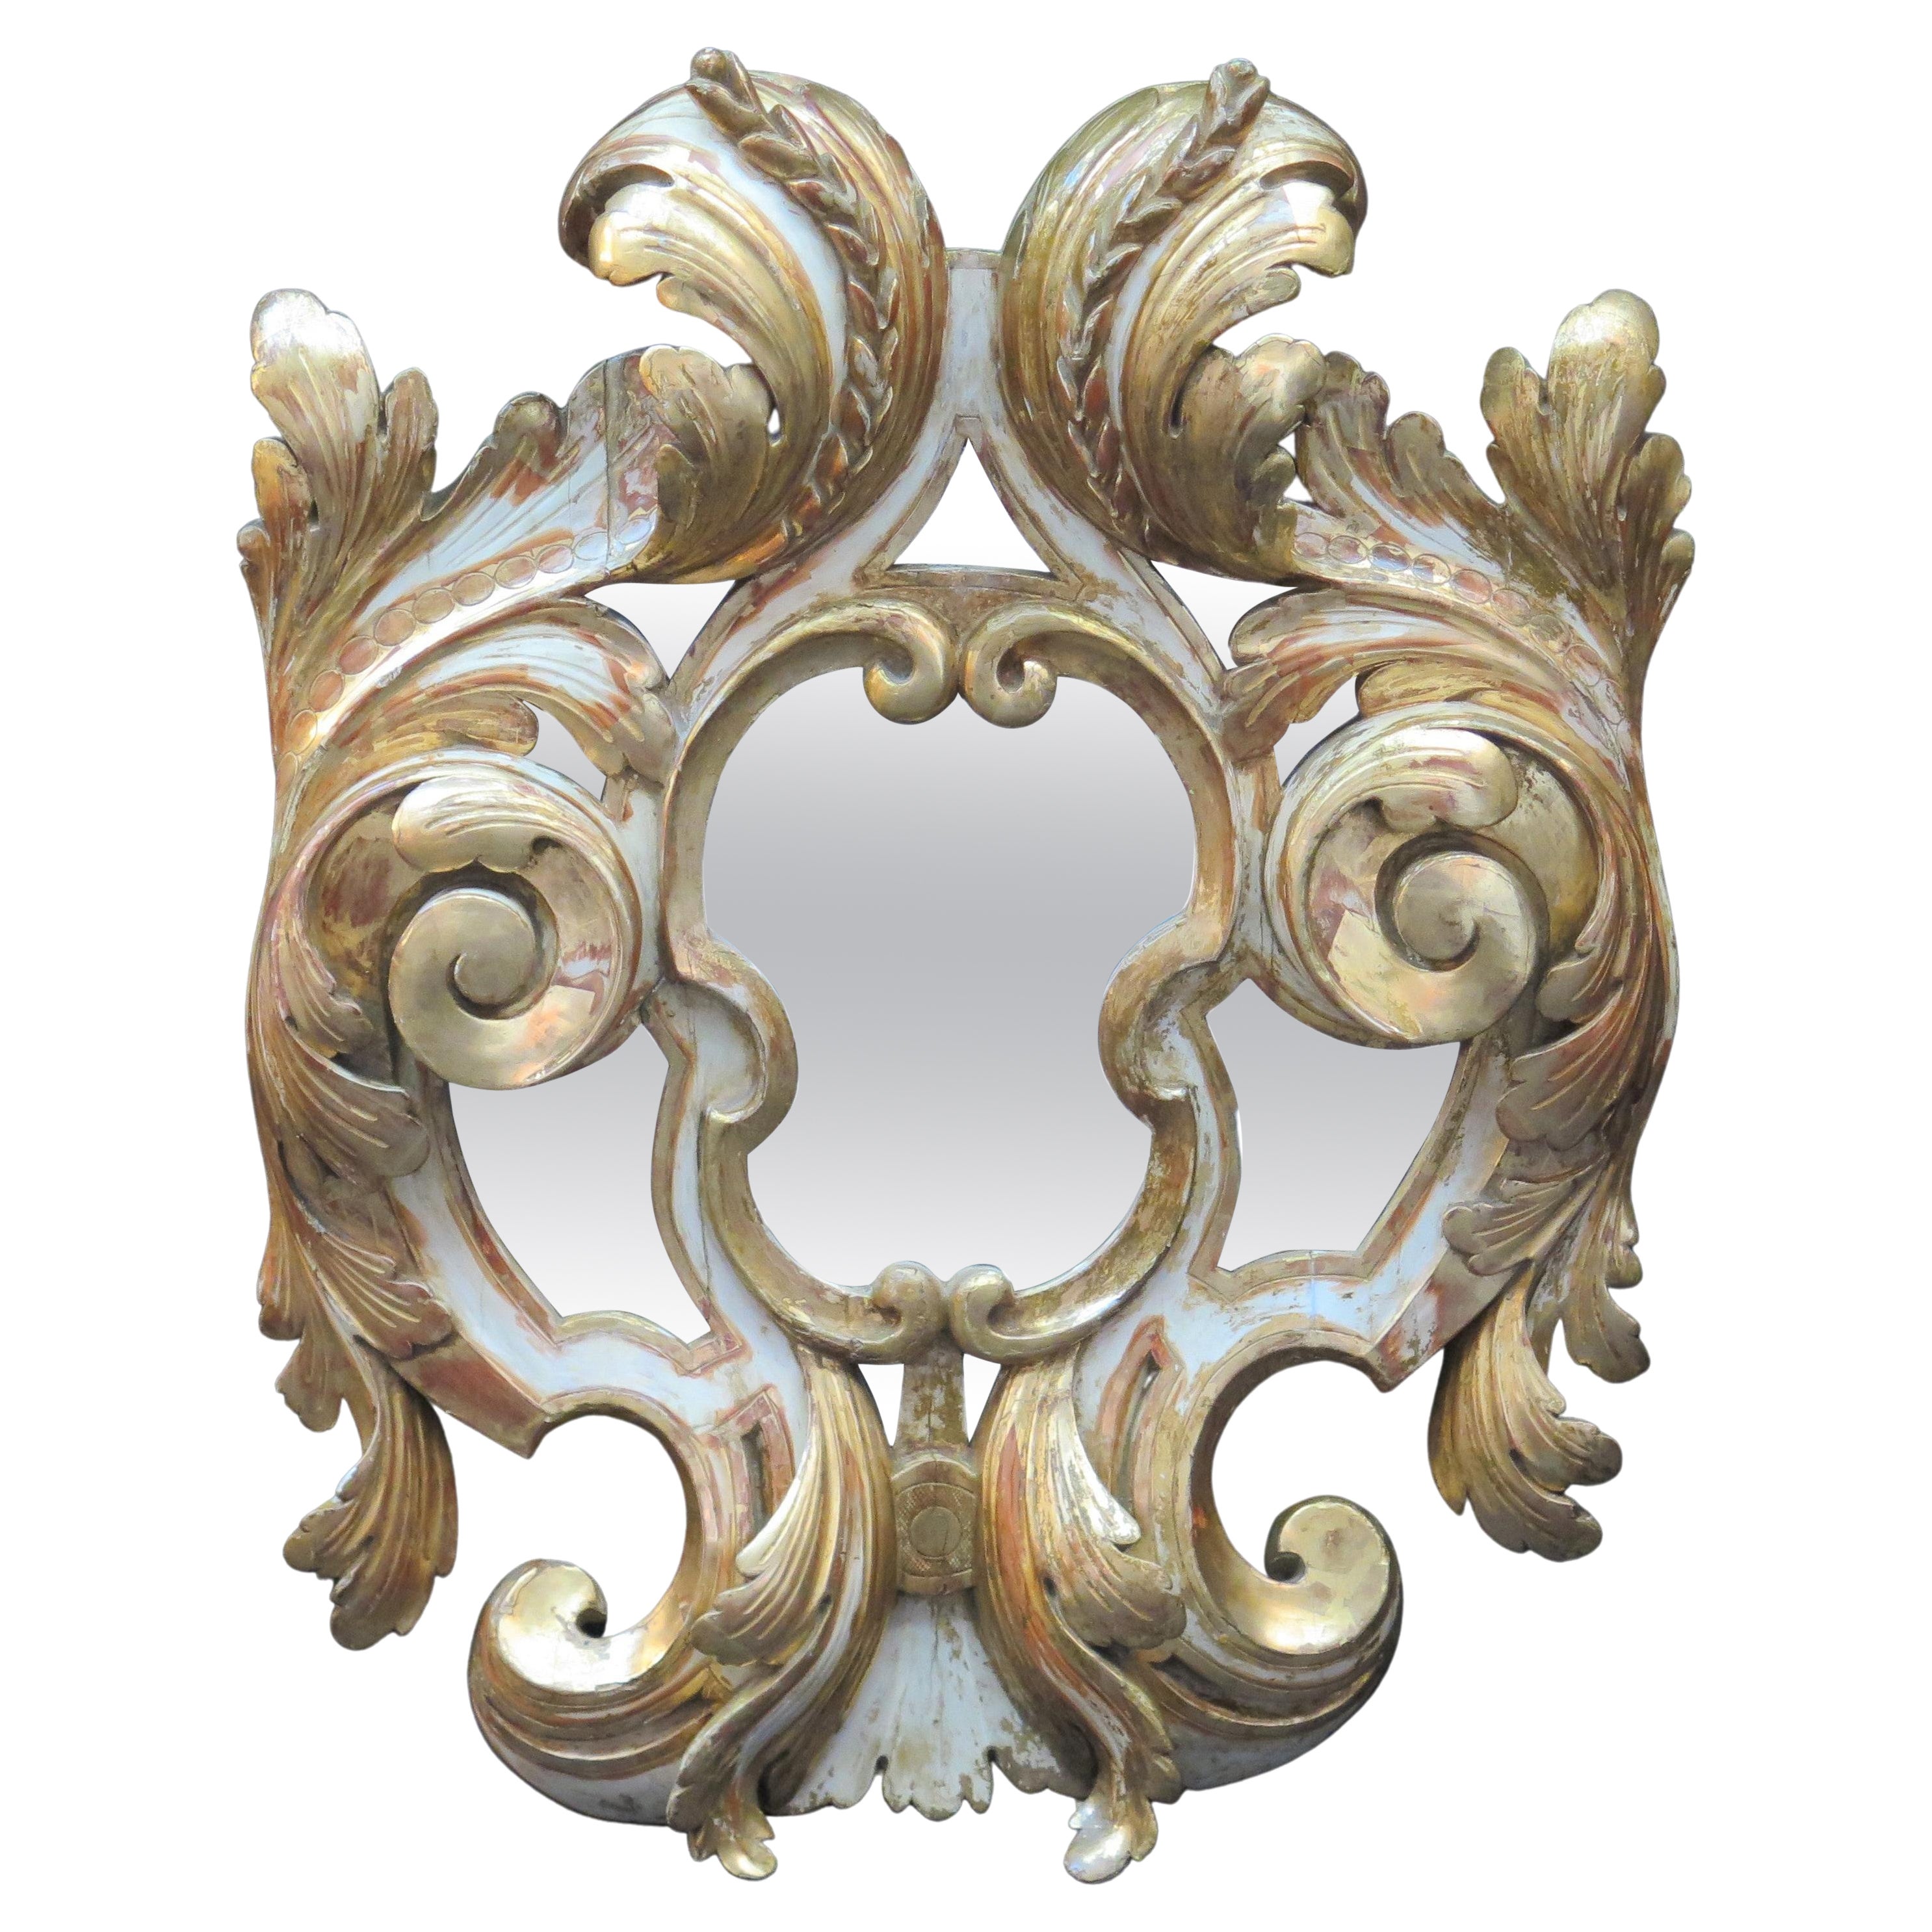 Grand miroir de style baroque en bois doré sculpté, vers 1850, Italie